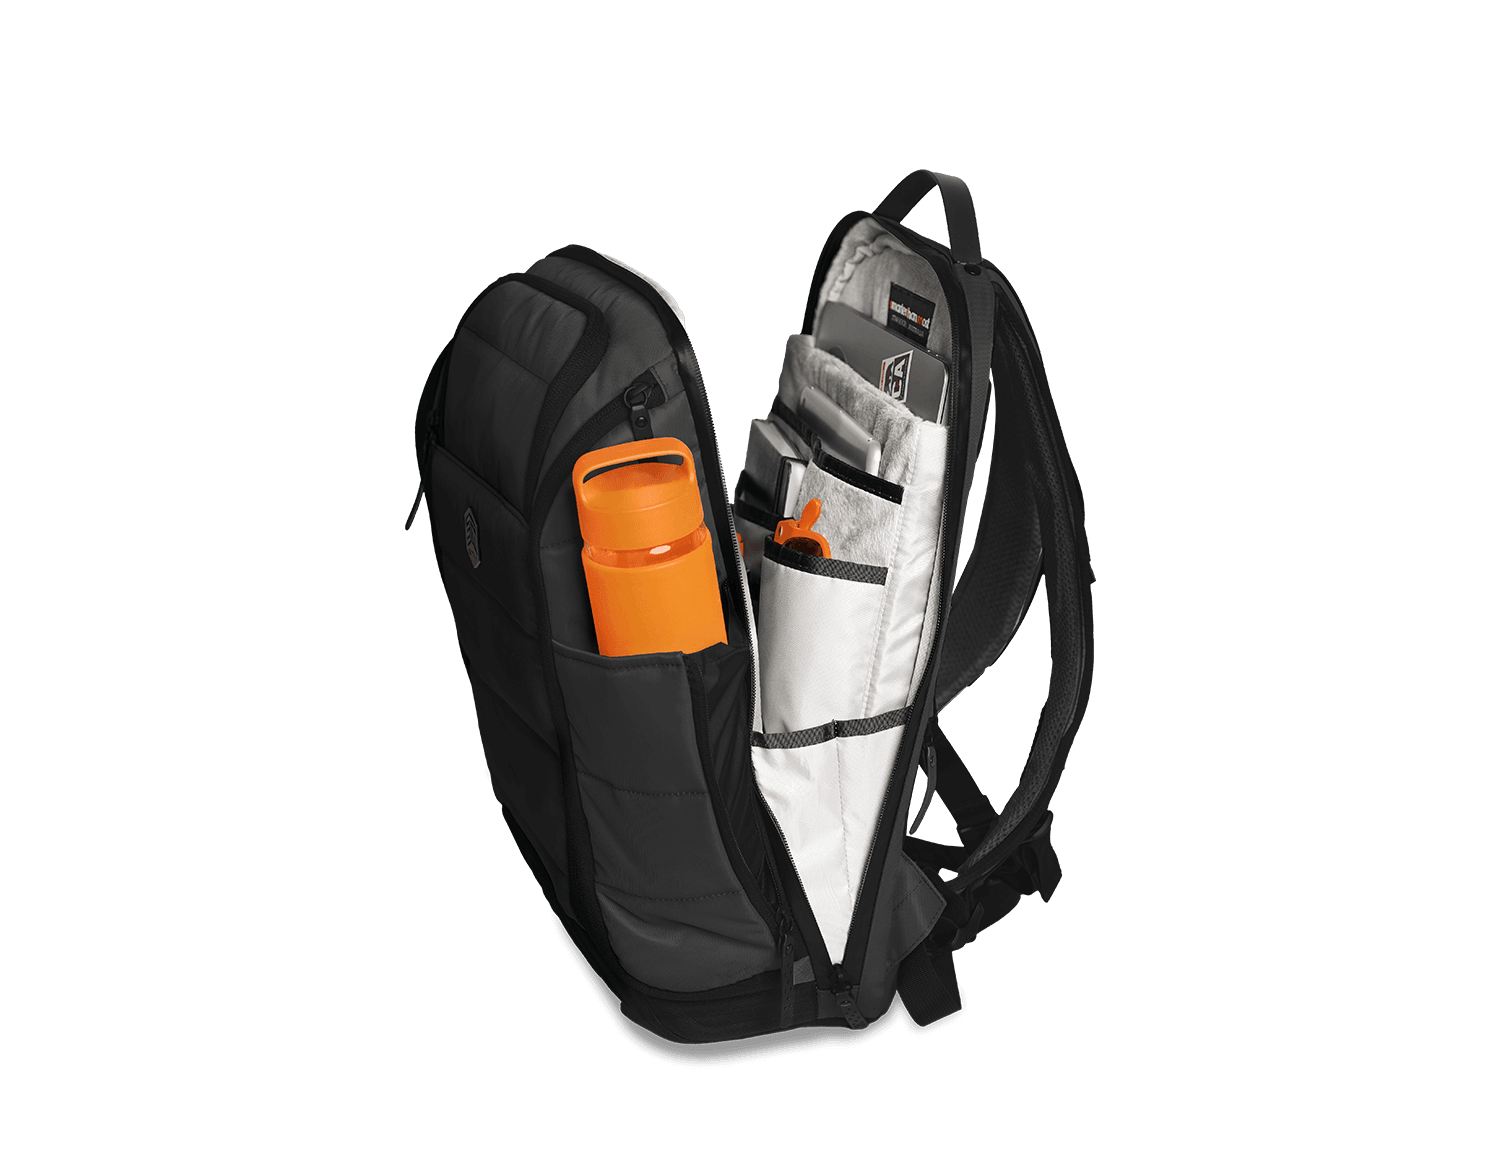 STM Dux 15" 16L Laptop Backpack - Marknet Technology